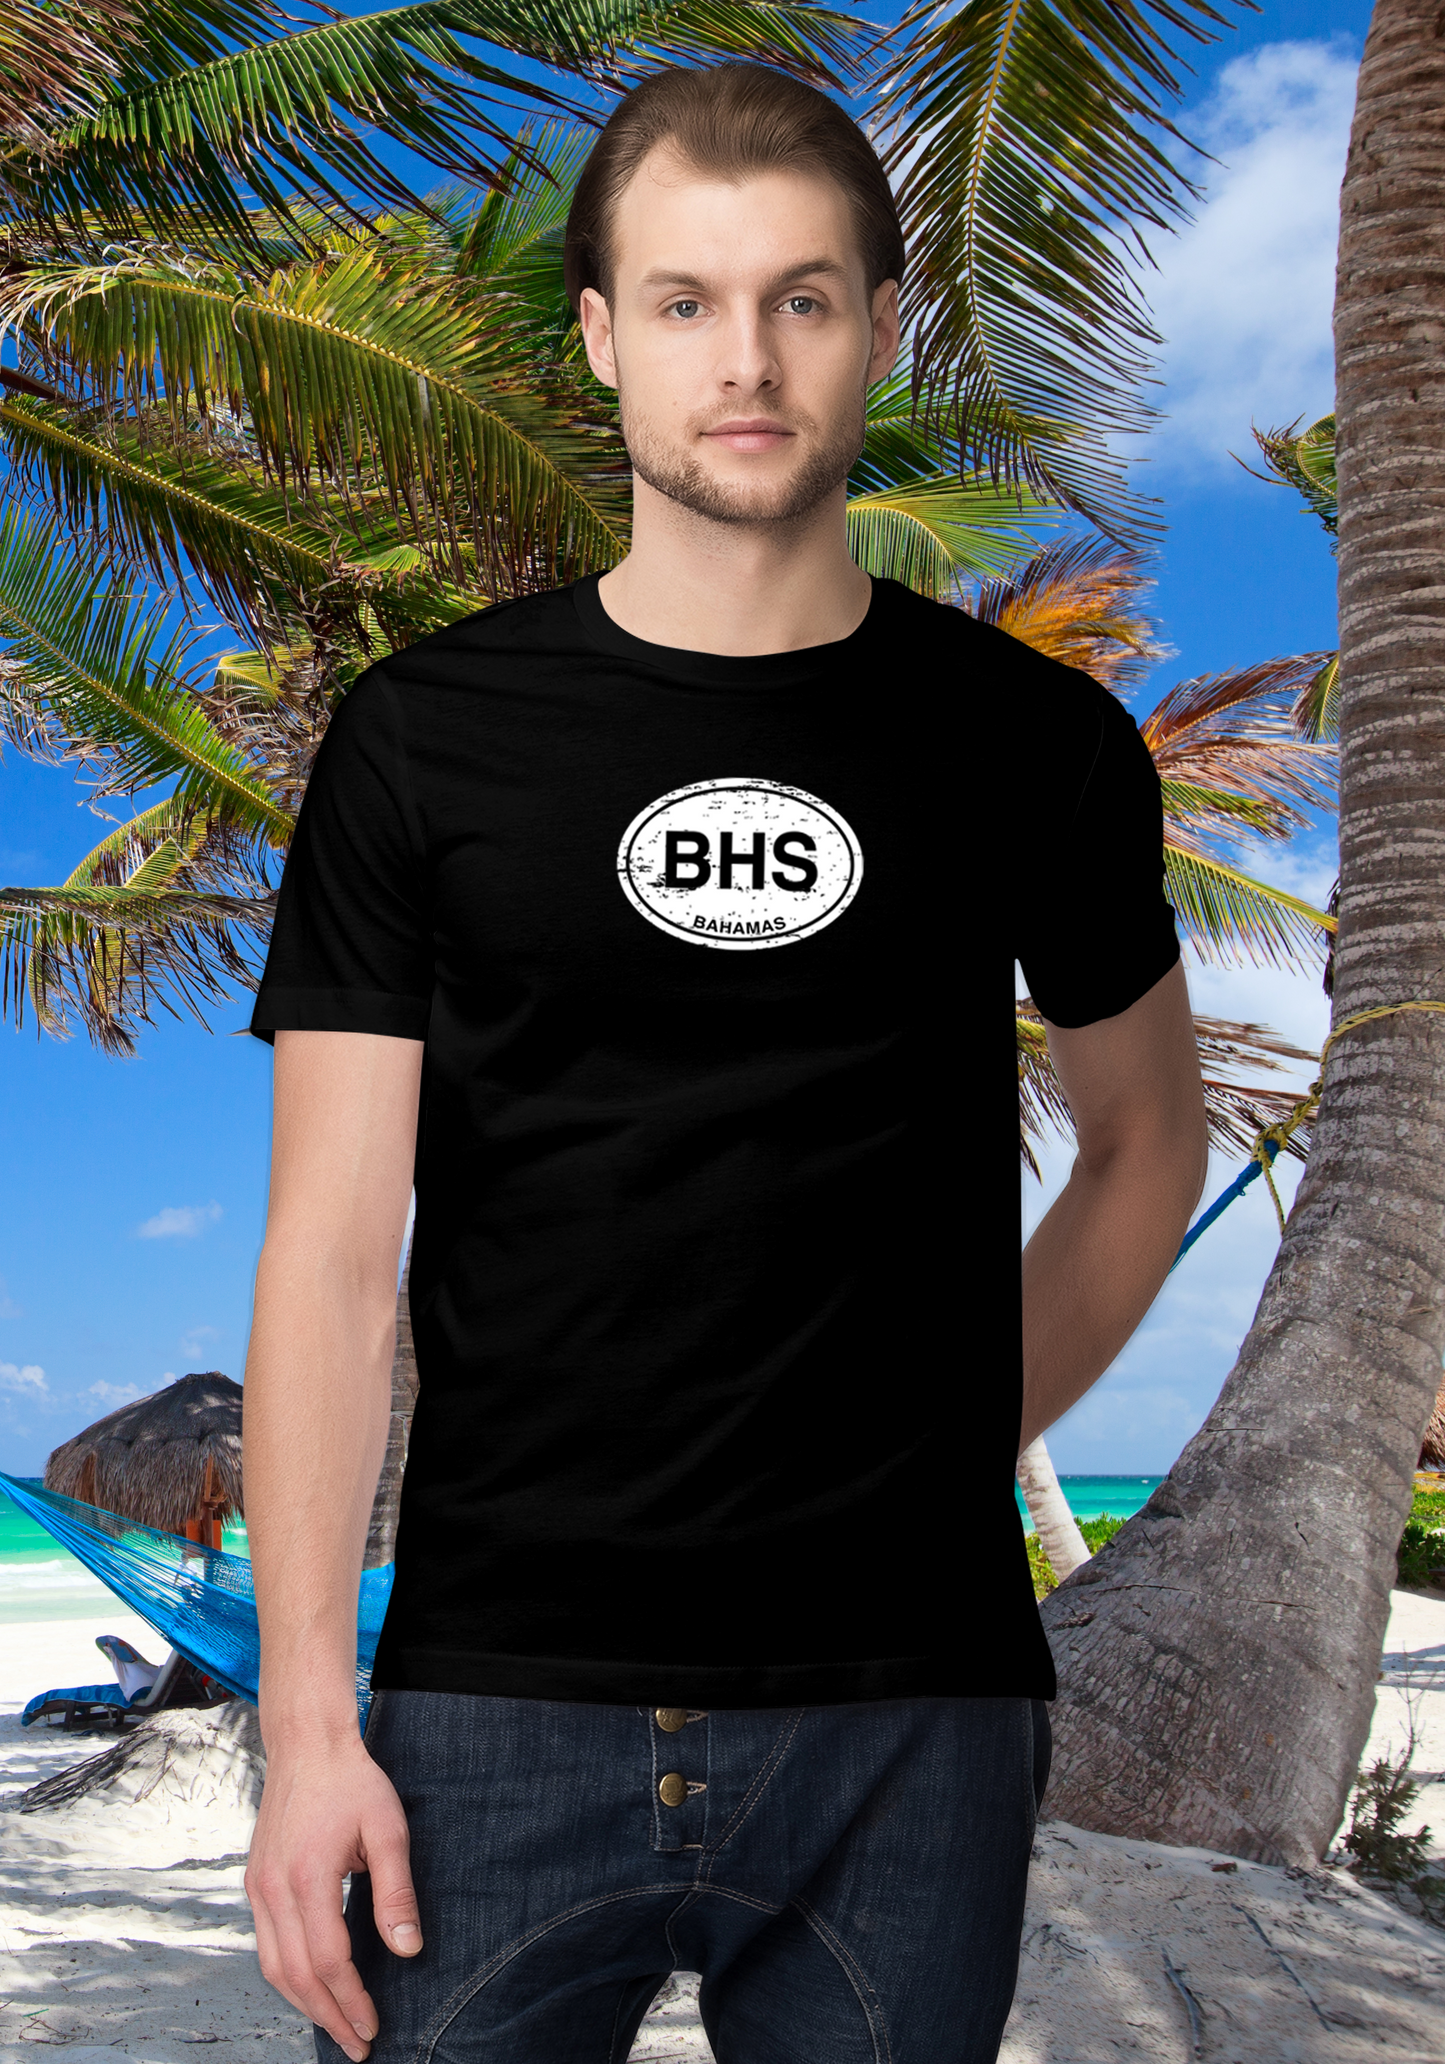 Bahamas Men's Classic T-Shirt Souvenirs - My Destination Location